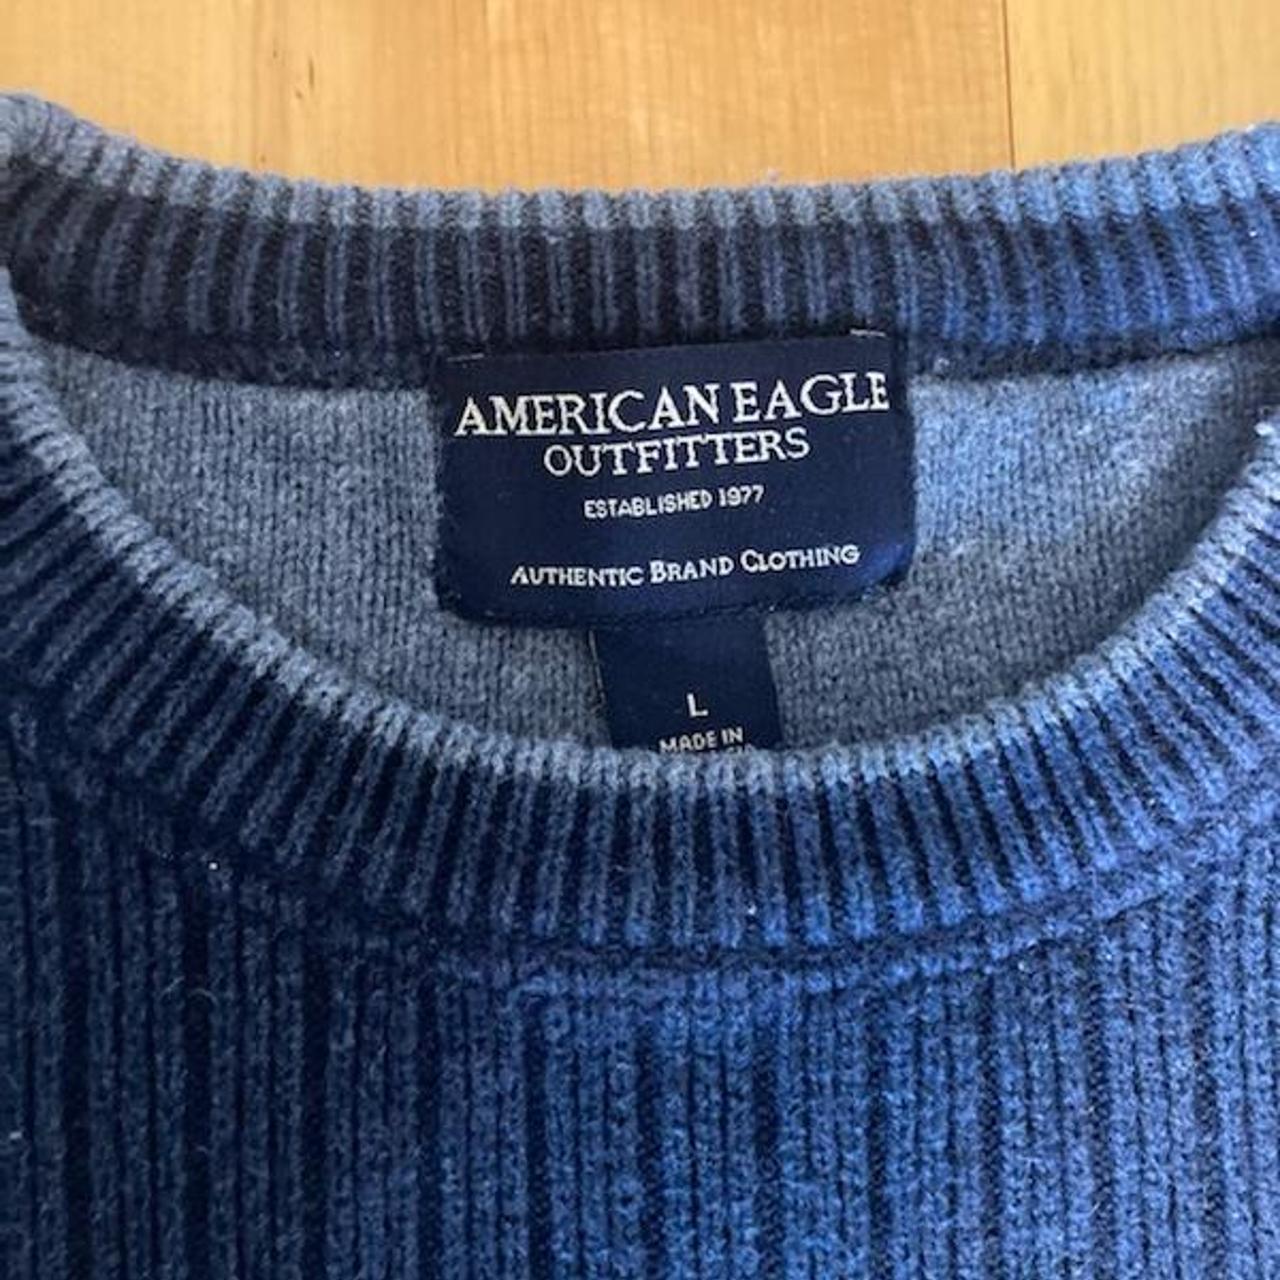 Vintage American Eagle sweater, size men’s... - Depop